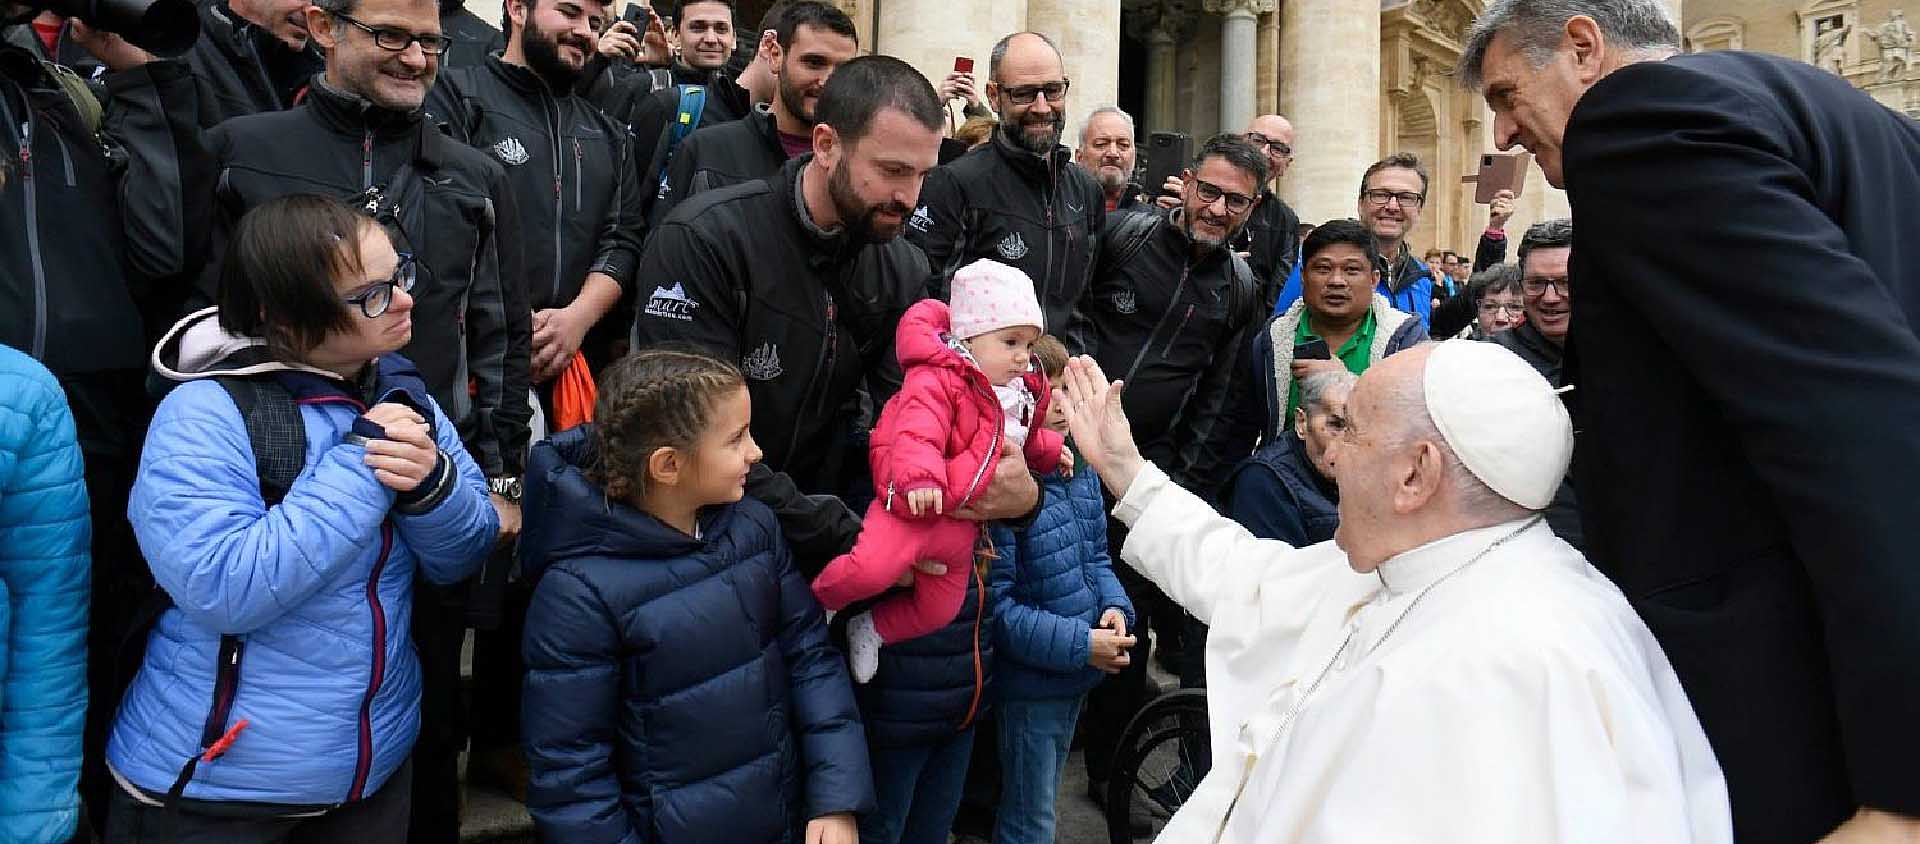 «La consolation est un mouvement intime qui touche au plus profond de nous-mêmes", a expliqué le pape | © Vatican Media